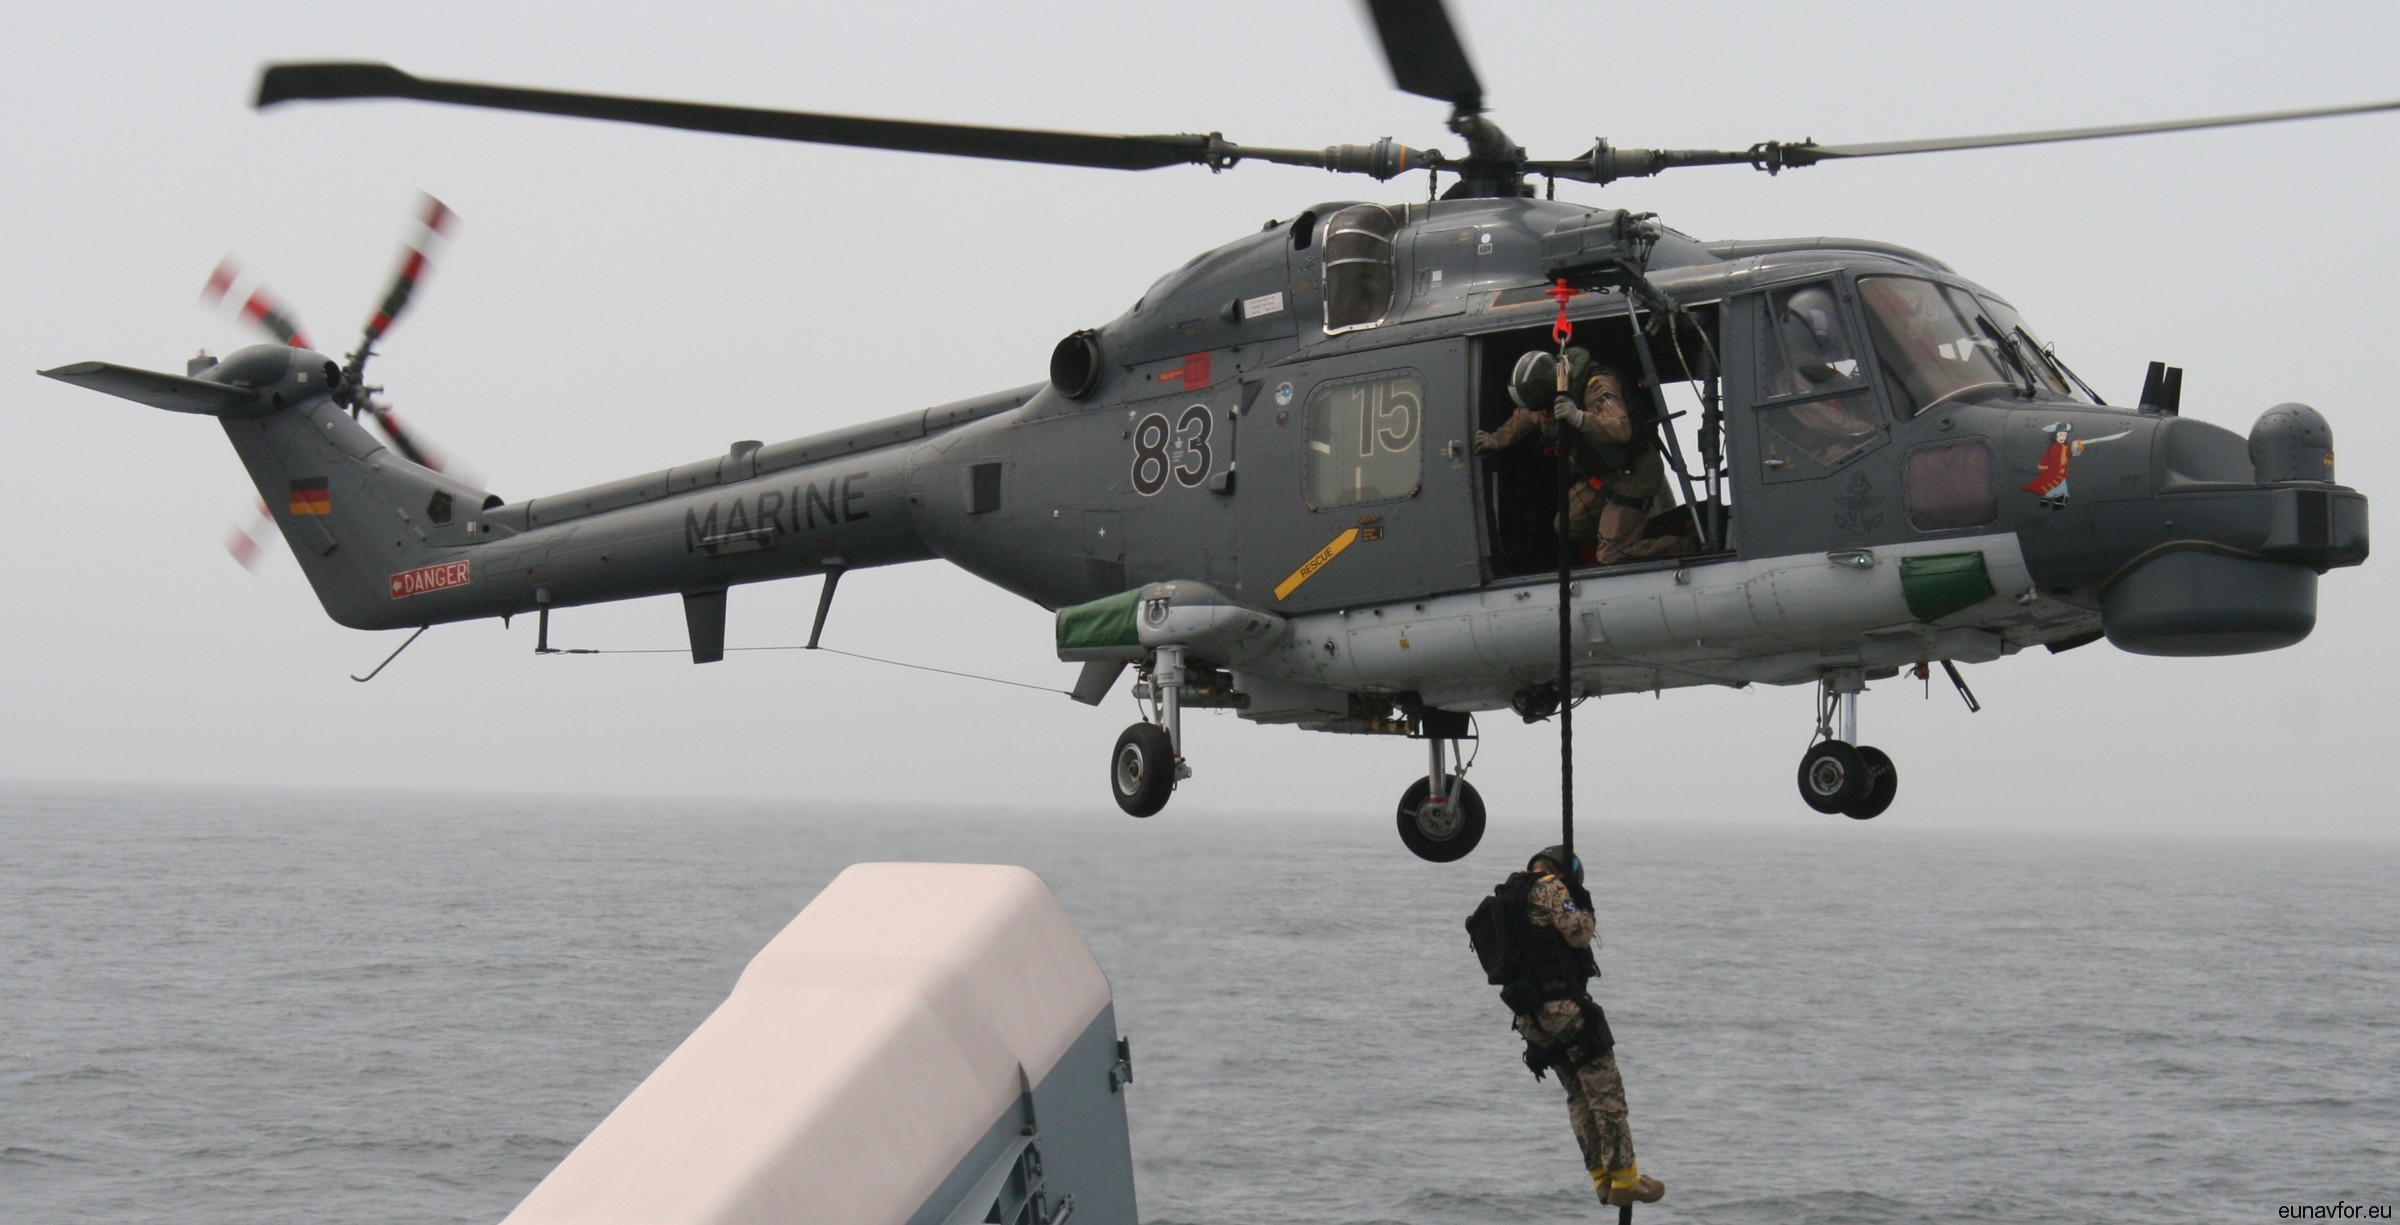 sea lynx mk.88a westland naval helicopter german navy deutsche marine 79